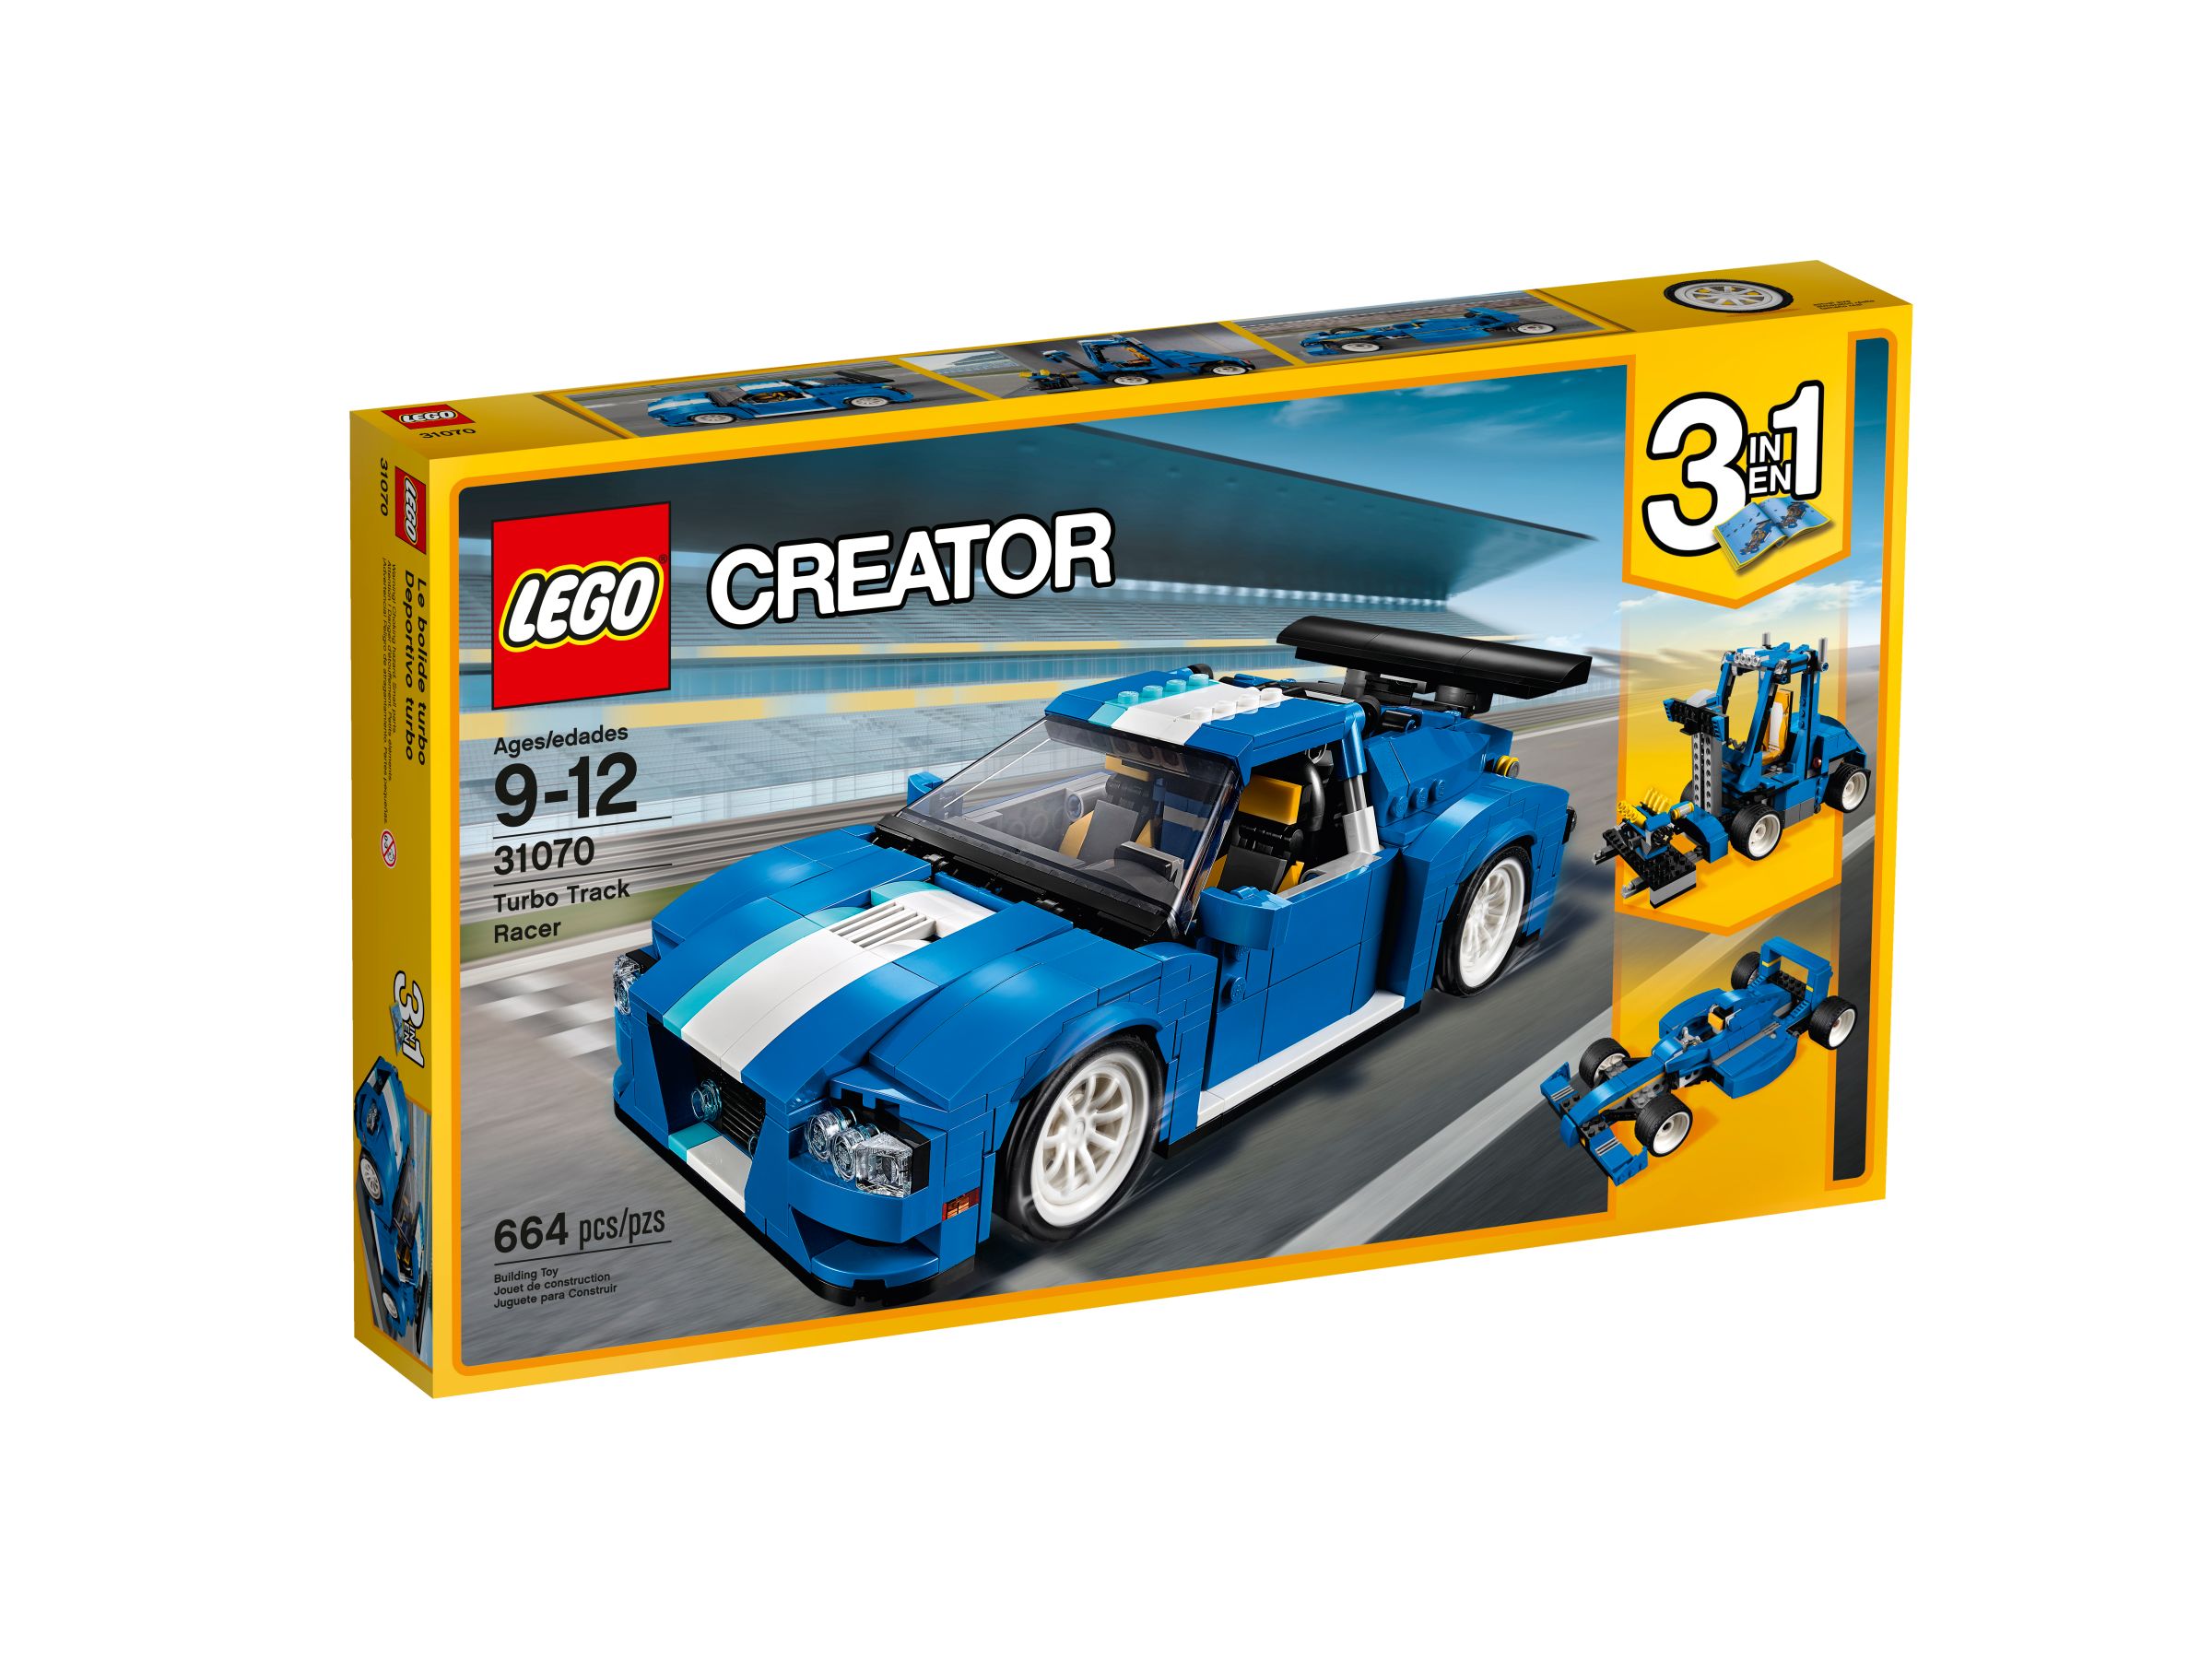 LEGO Creator 31070 Turborennwagen LEGO_31070_alt1.jpg